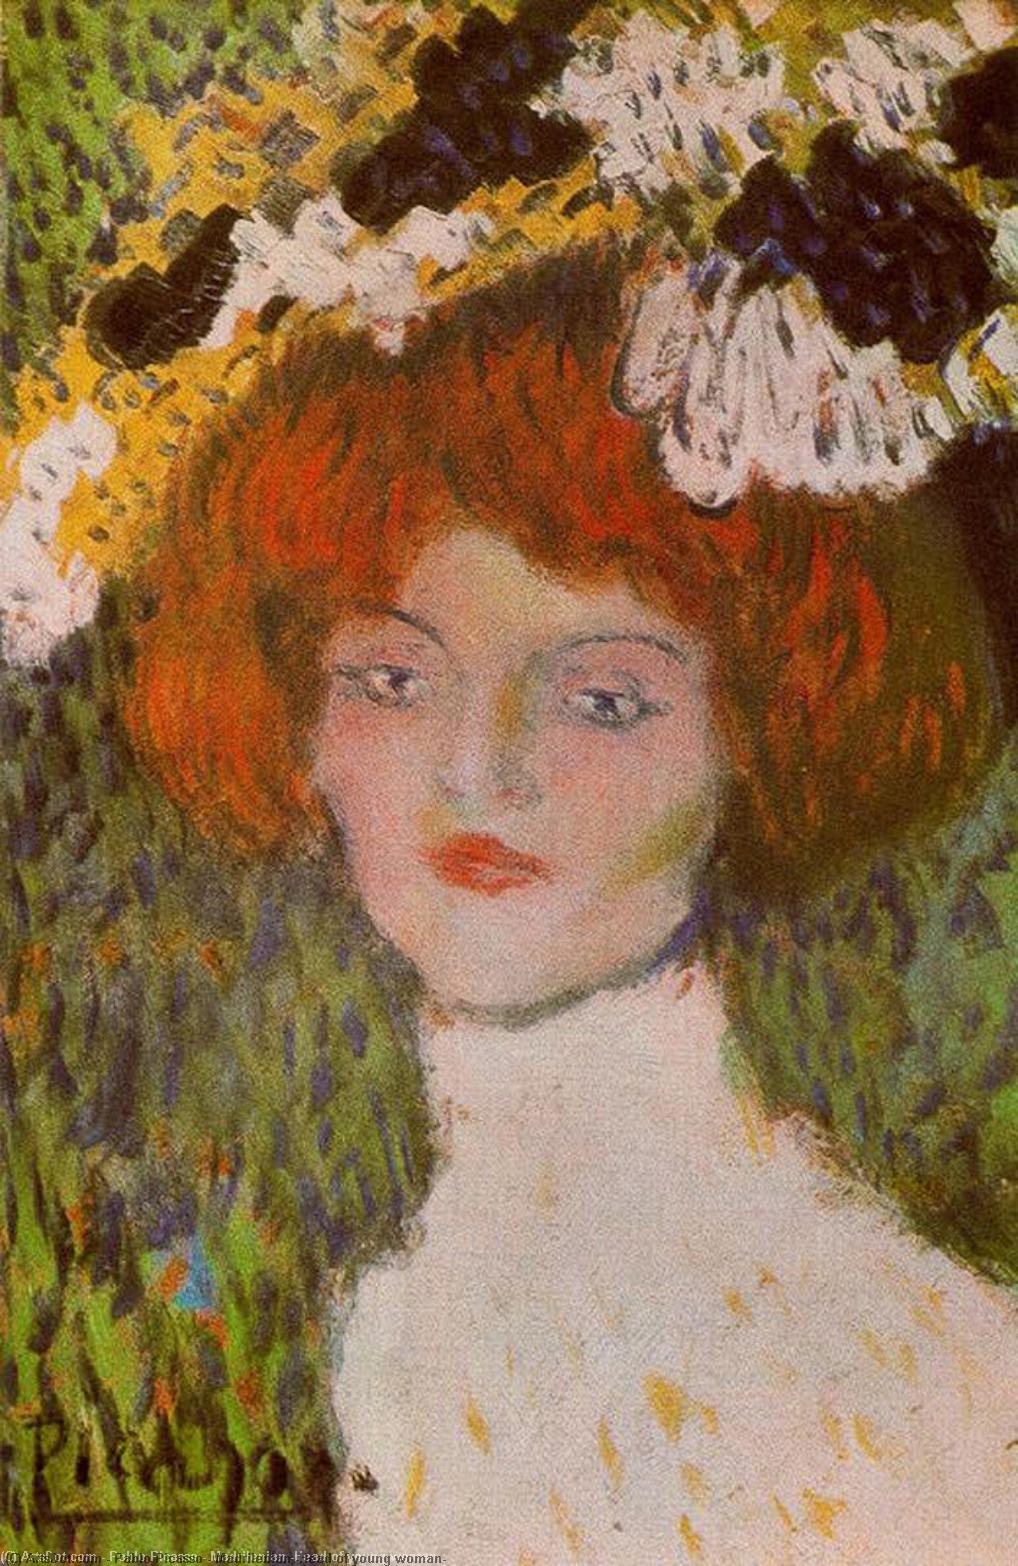 Wikioo.org - Bách khoa toàn thư về mỹ thuật - Vẽ tranh, Tác phẩm nghệ thuật Pablo Picasso - Madrilenian (Head of young woman)